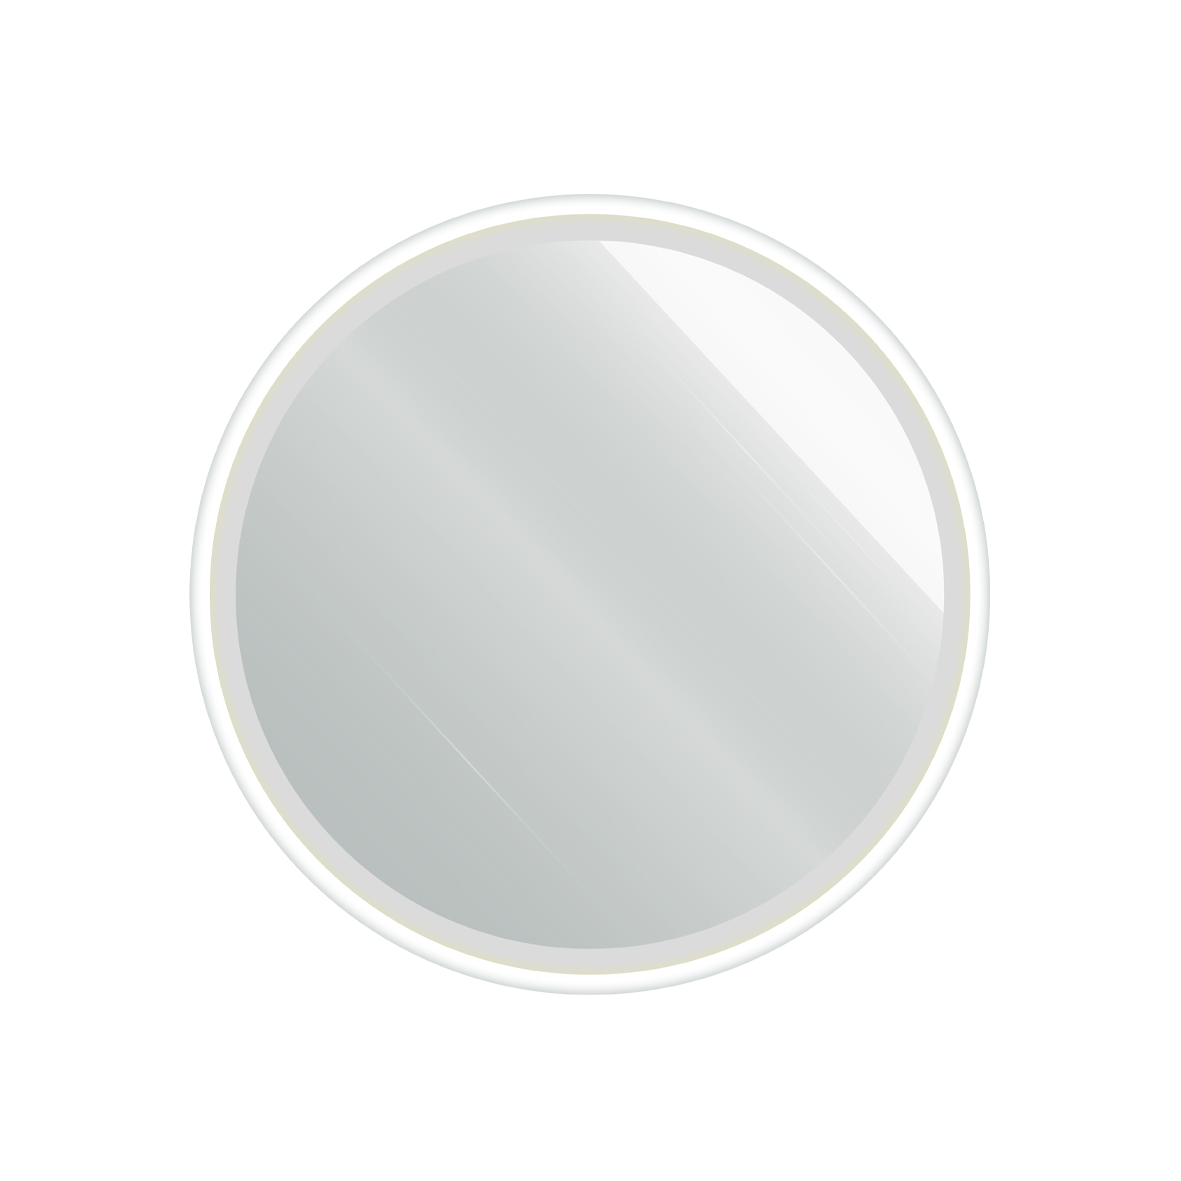 САНАКС - Зеркало D 600 мм, сенсорное, с внутренней LED подсветкой, белое обрамление, круглое